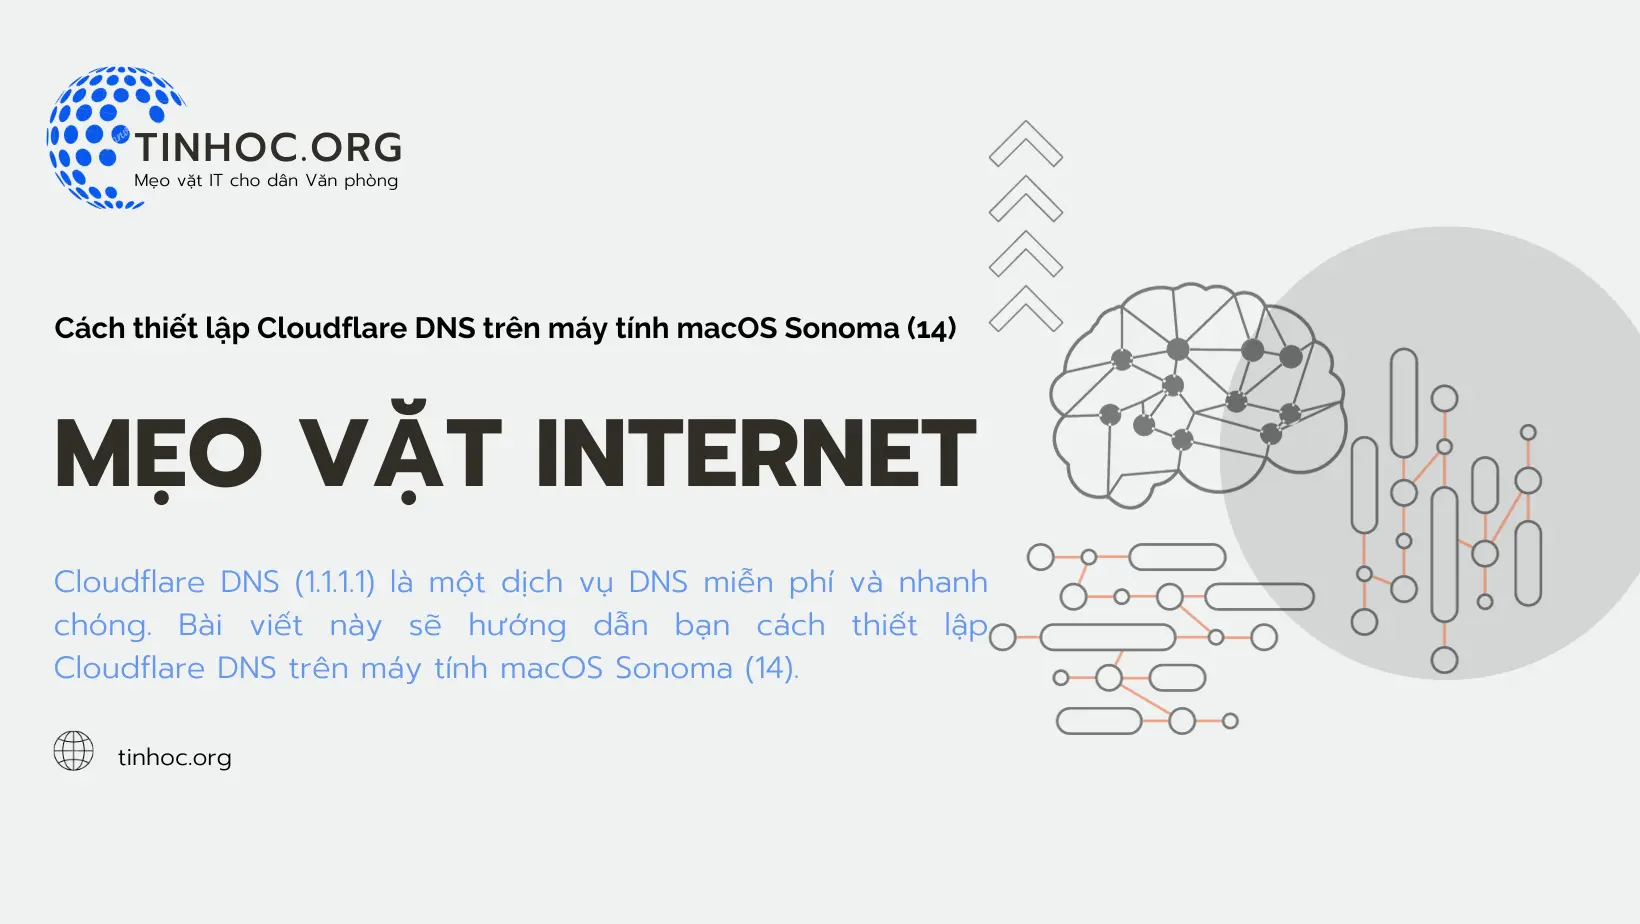 Hướng dẫn cách thiết lập Cloudflare DNS trên macOS Sonoma (14), giúp tăng tốc độ duyệt web, bảo vệ quyền riêng tư và ngăn chặn các cuộc tấn công DNS.